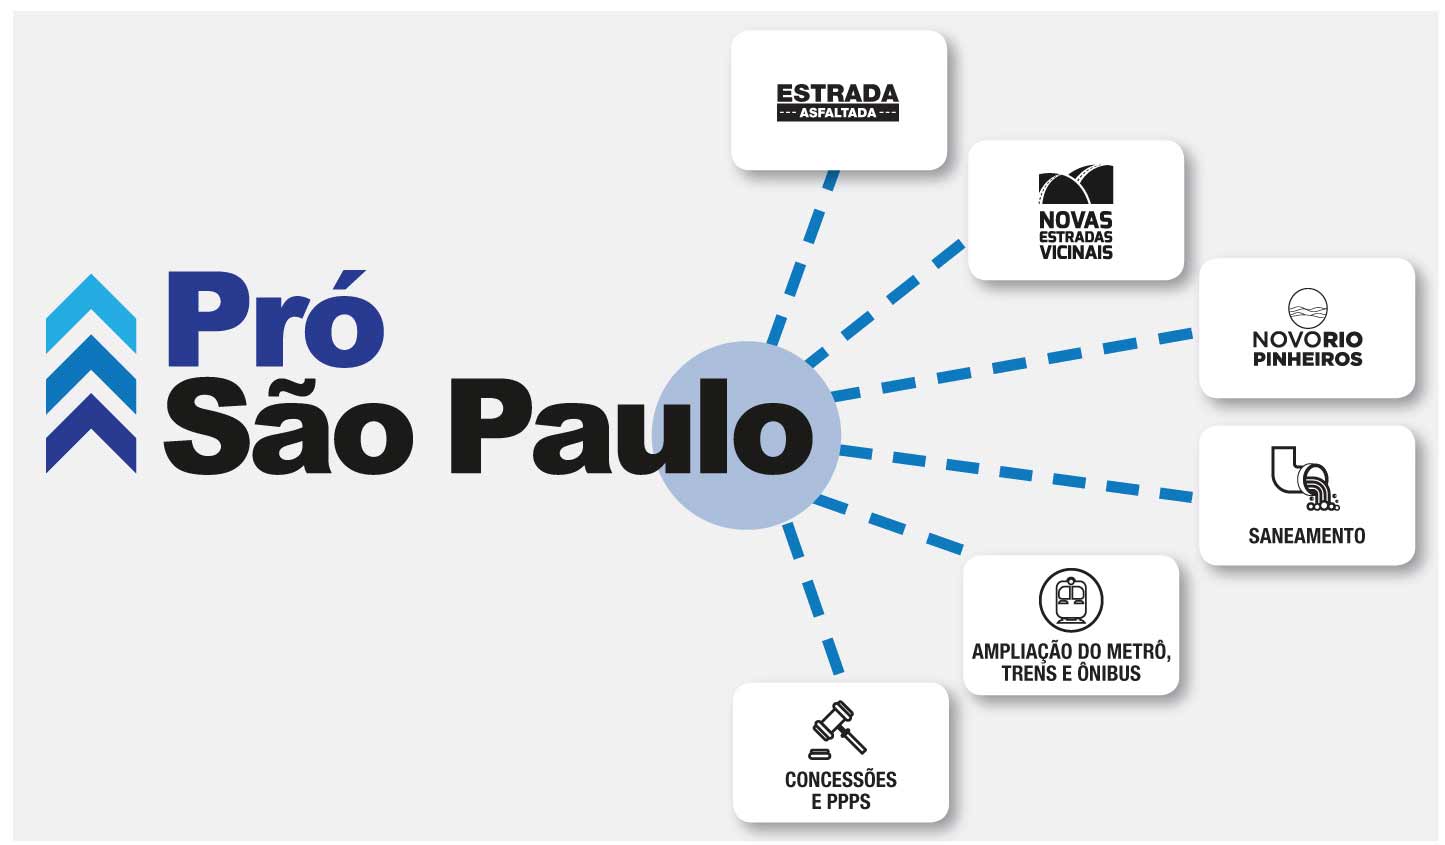 Programa Pró São Paulo: um passo importante para a modernização do estado